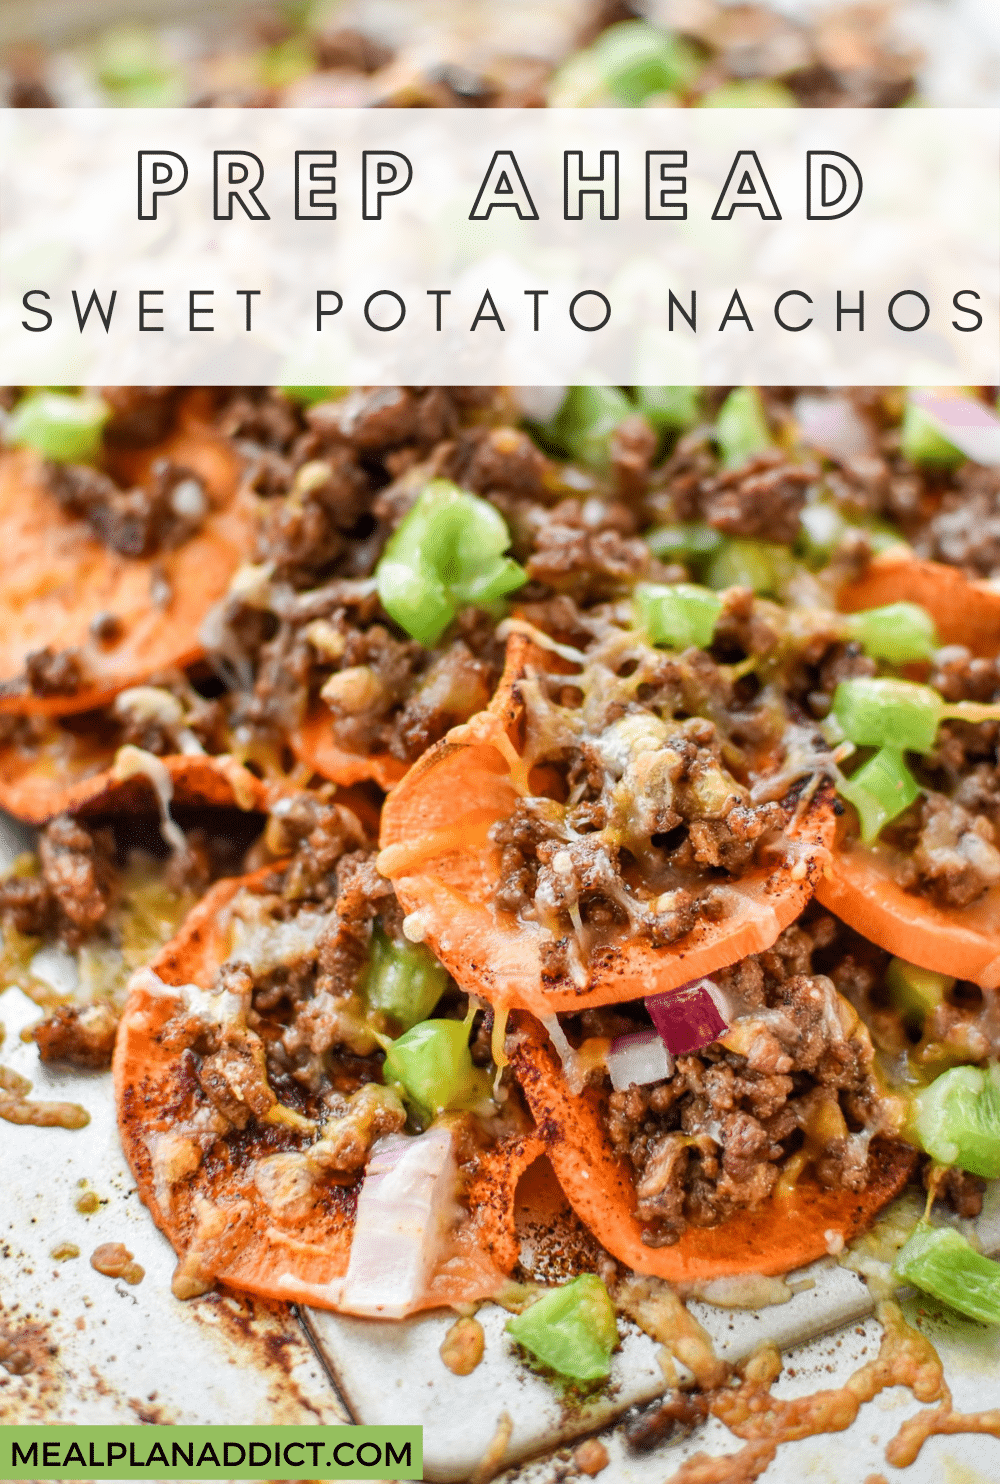 Sweet potato nachos pin for Pinterest